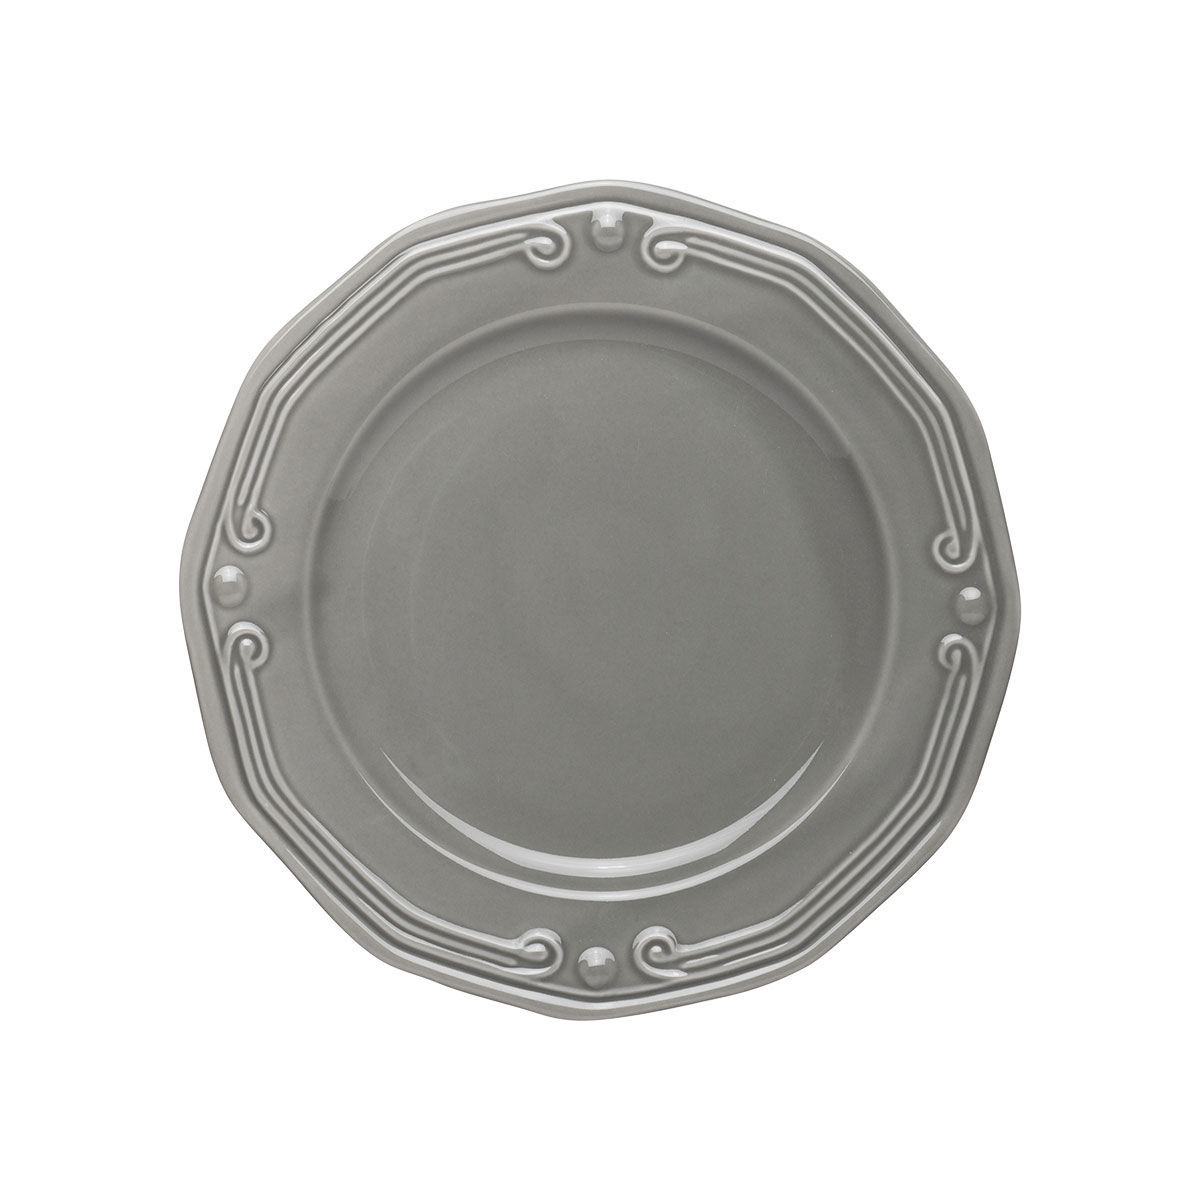 Πιάτο Ρηχό Πορσελάνης Ανάγλυφο Φ20cm Athénée Grey Estia 07-13660 - 1